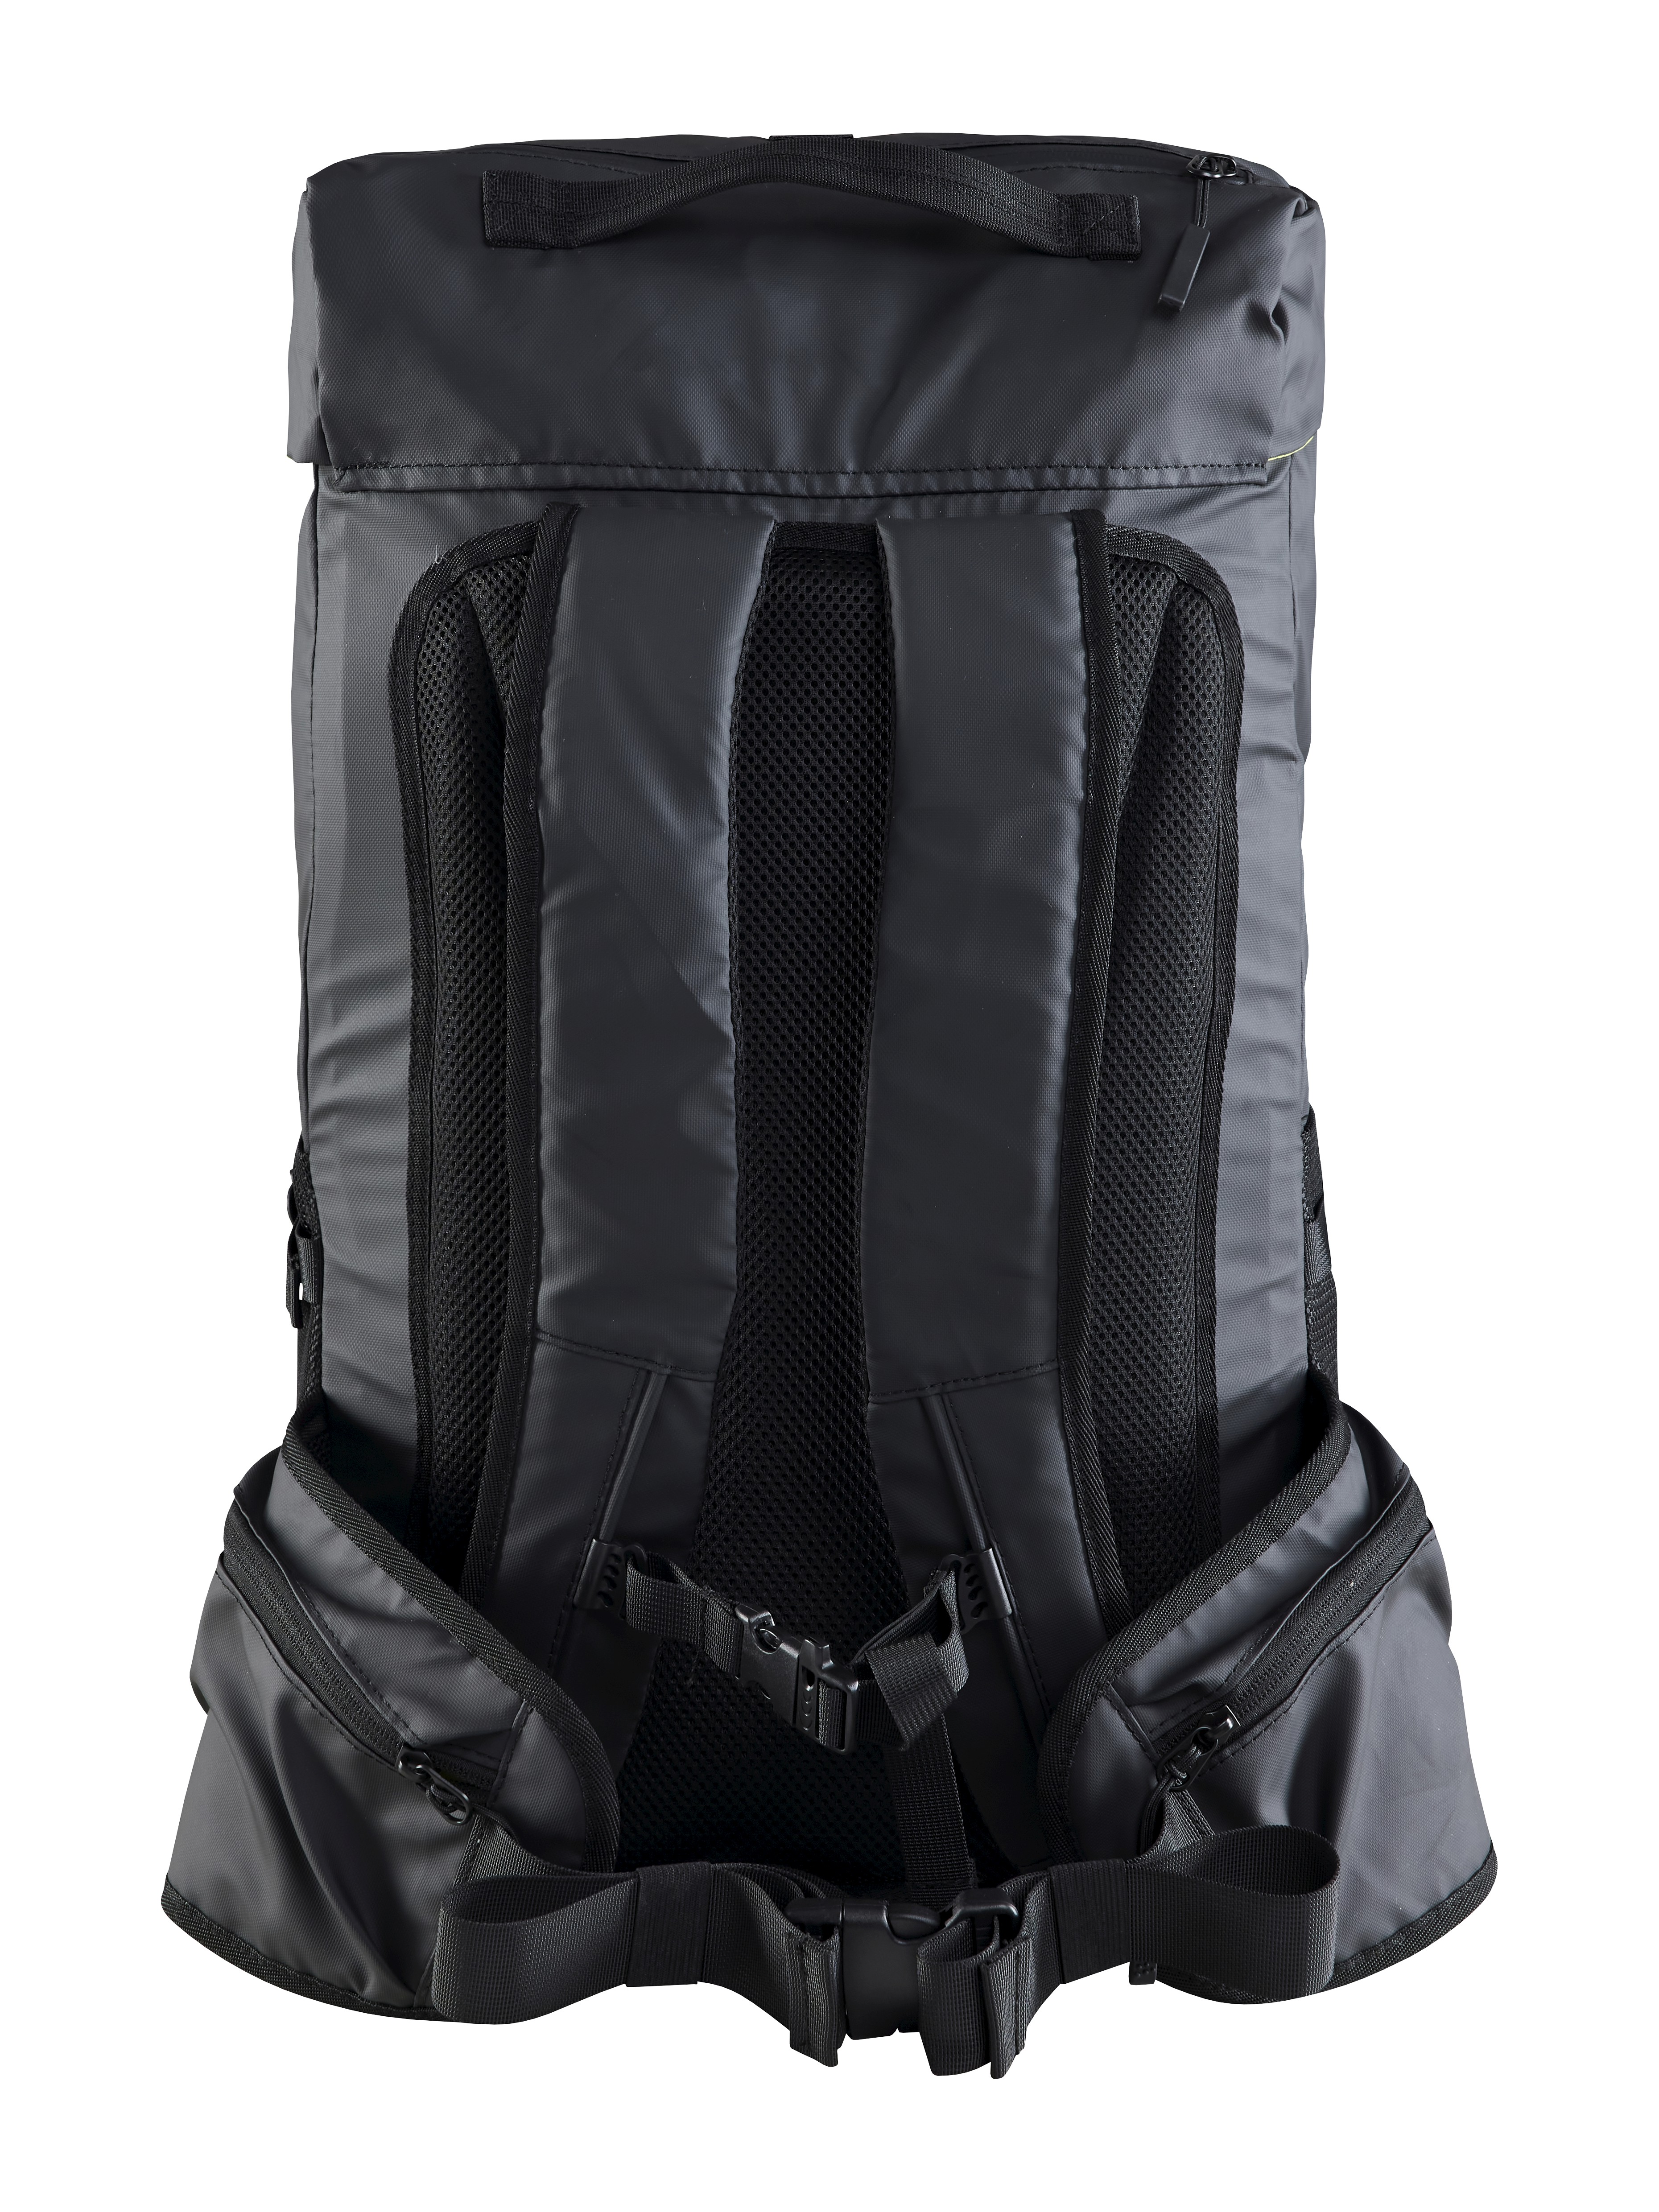 Adv Entity Travel Backpack 40 L - Grey | Craft Sportswear